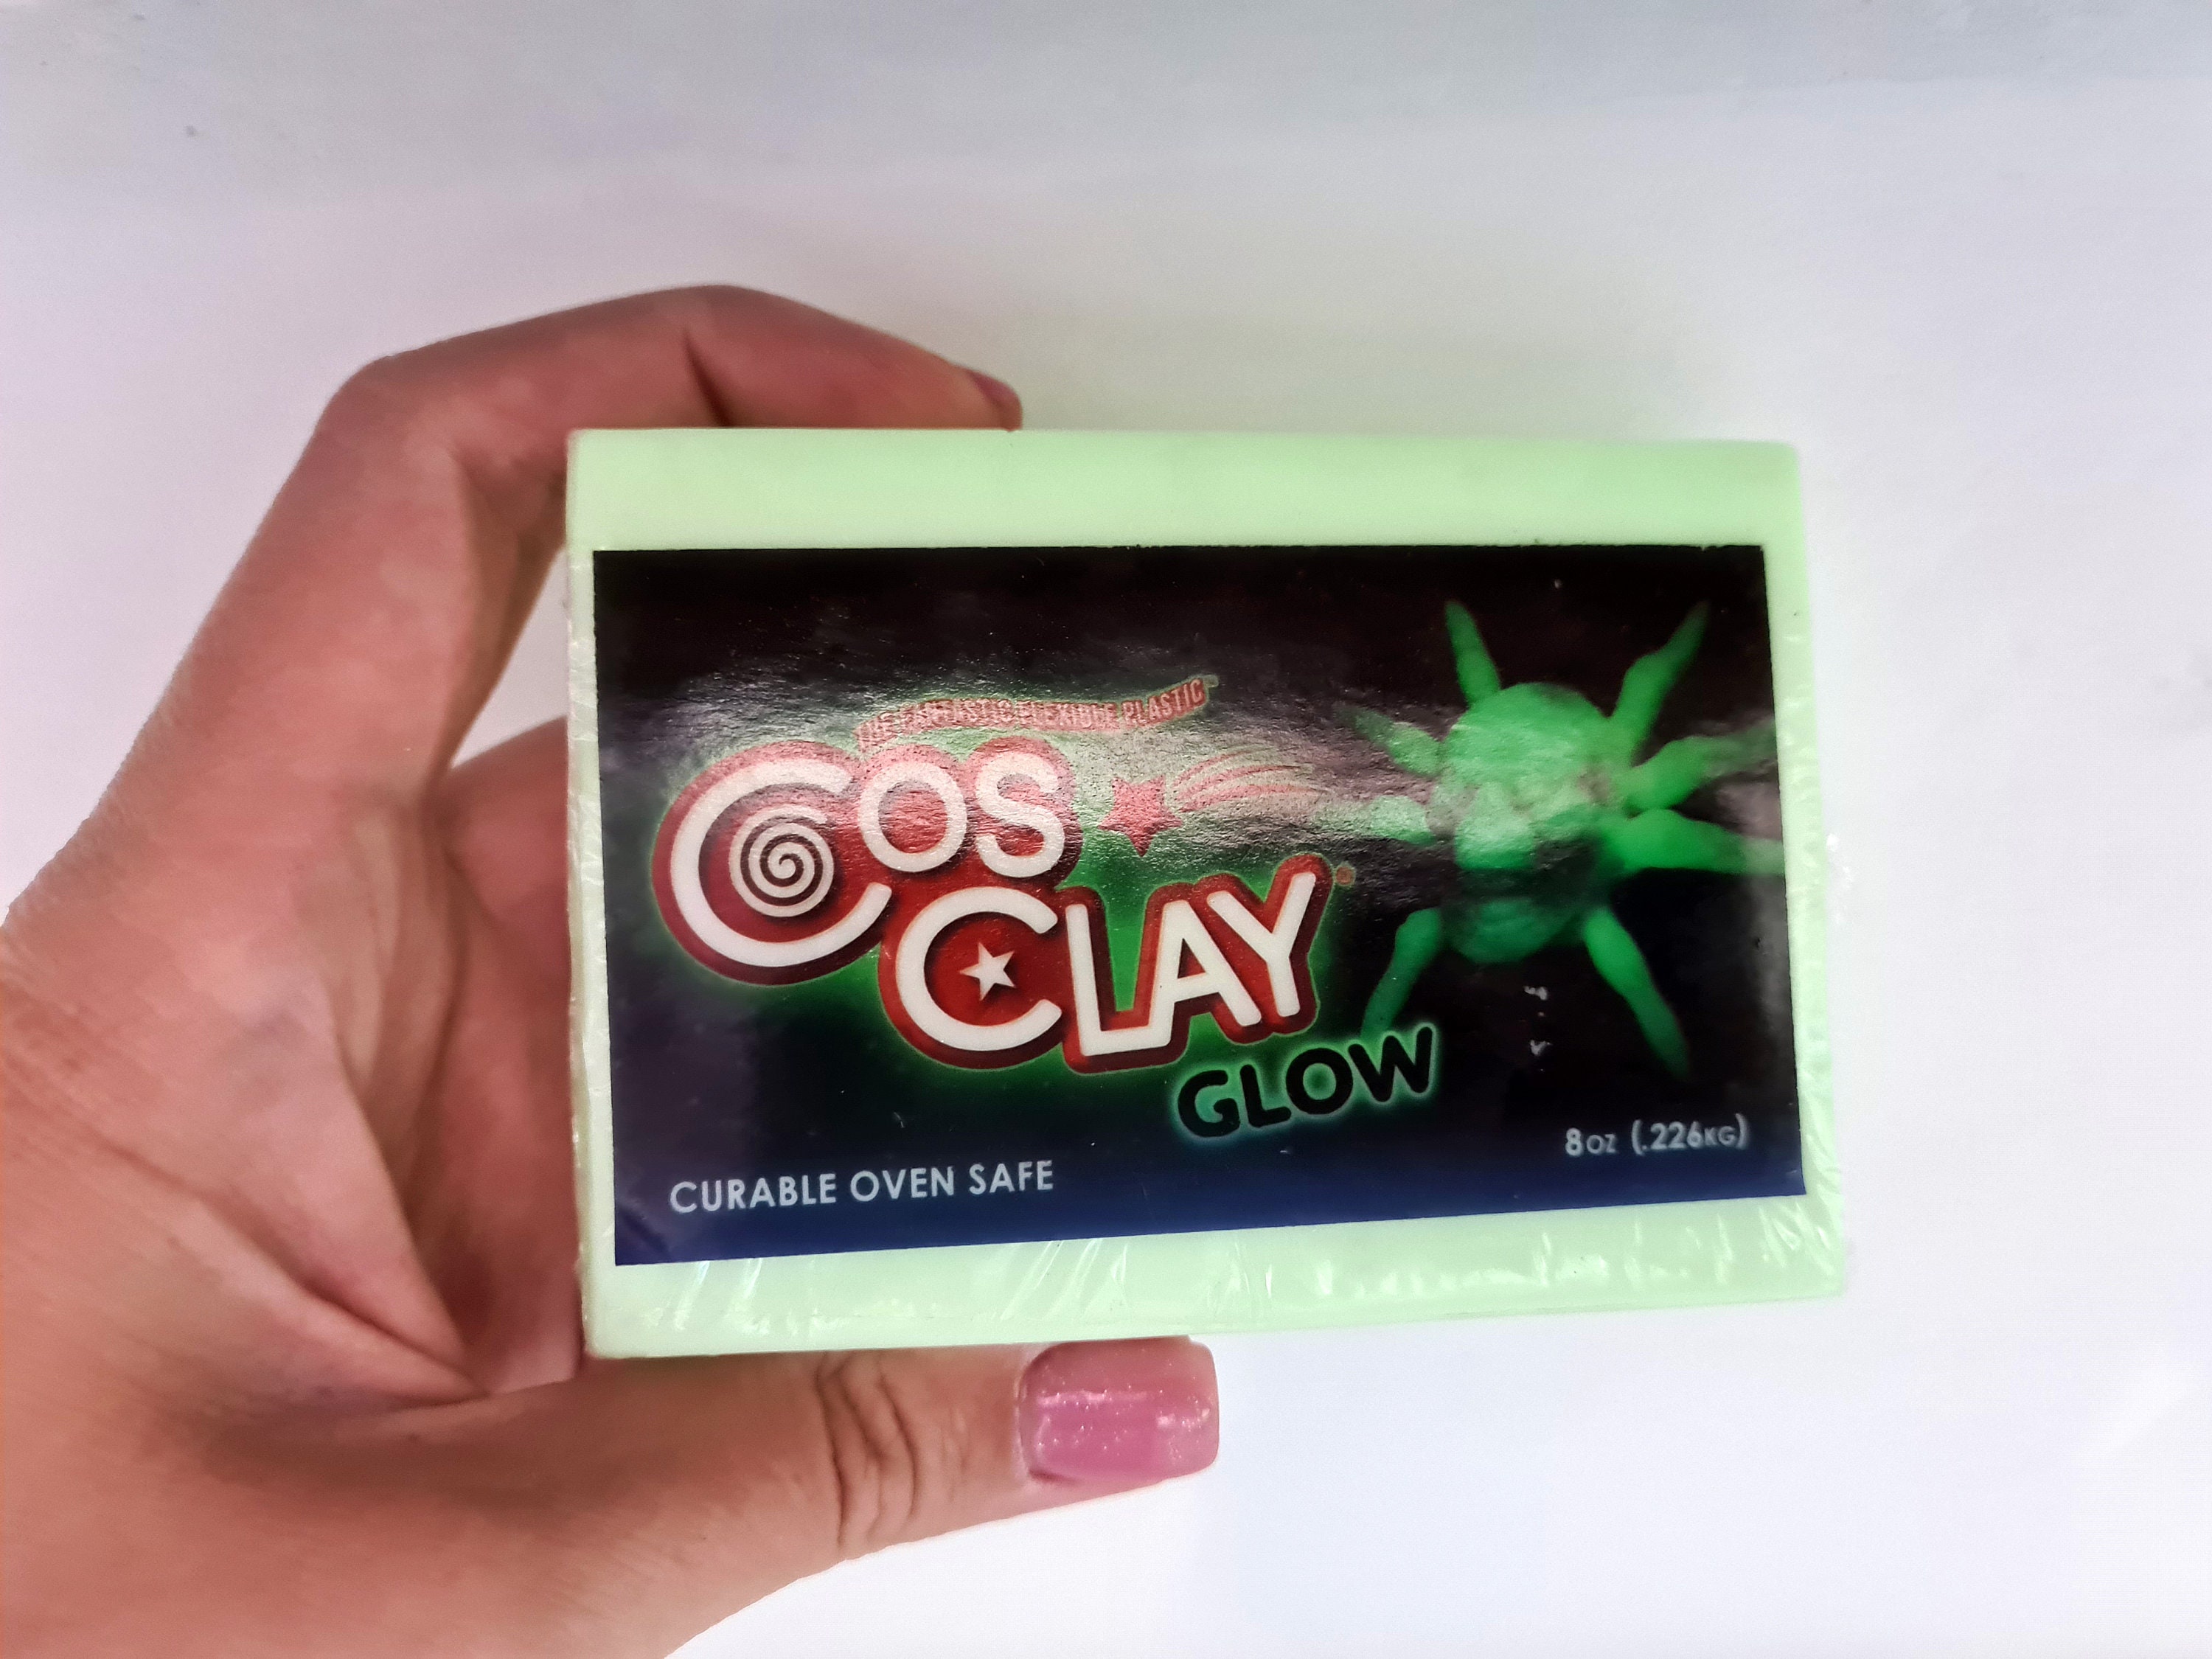 NEW Cosclay Liquid FX GLOW — Cosclay